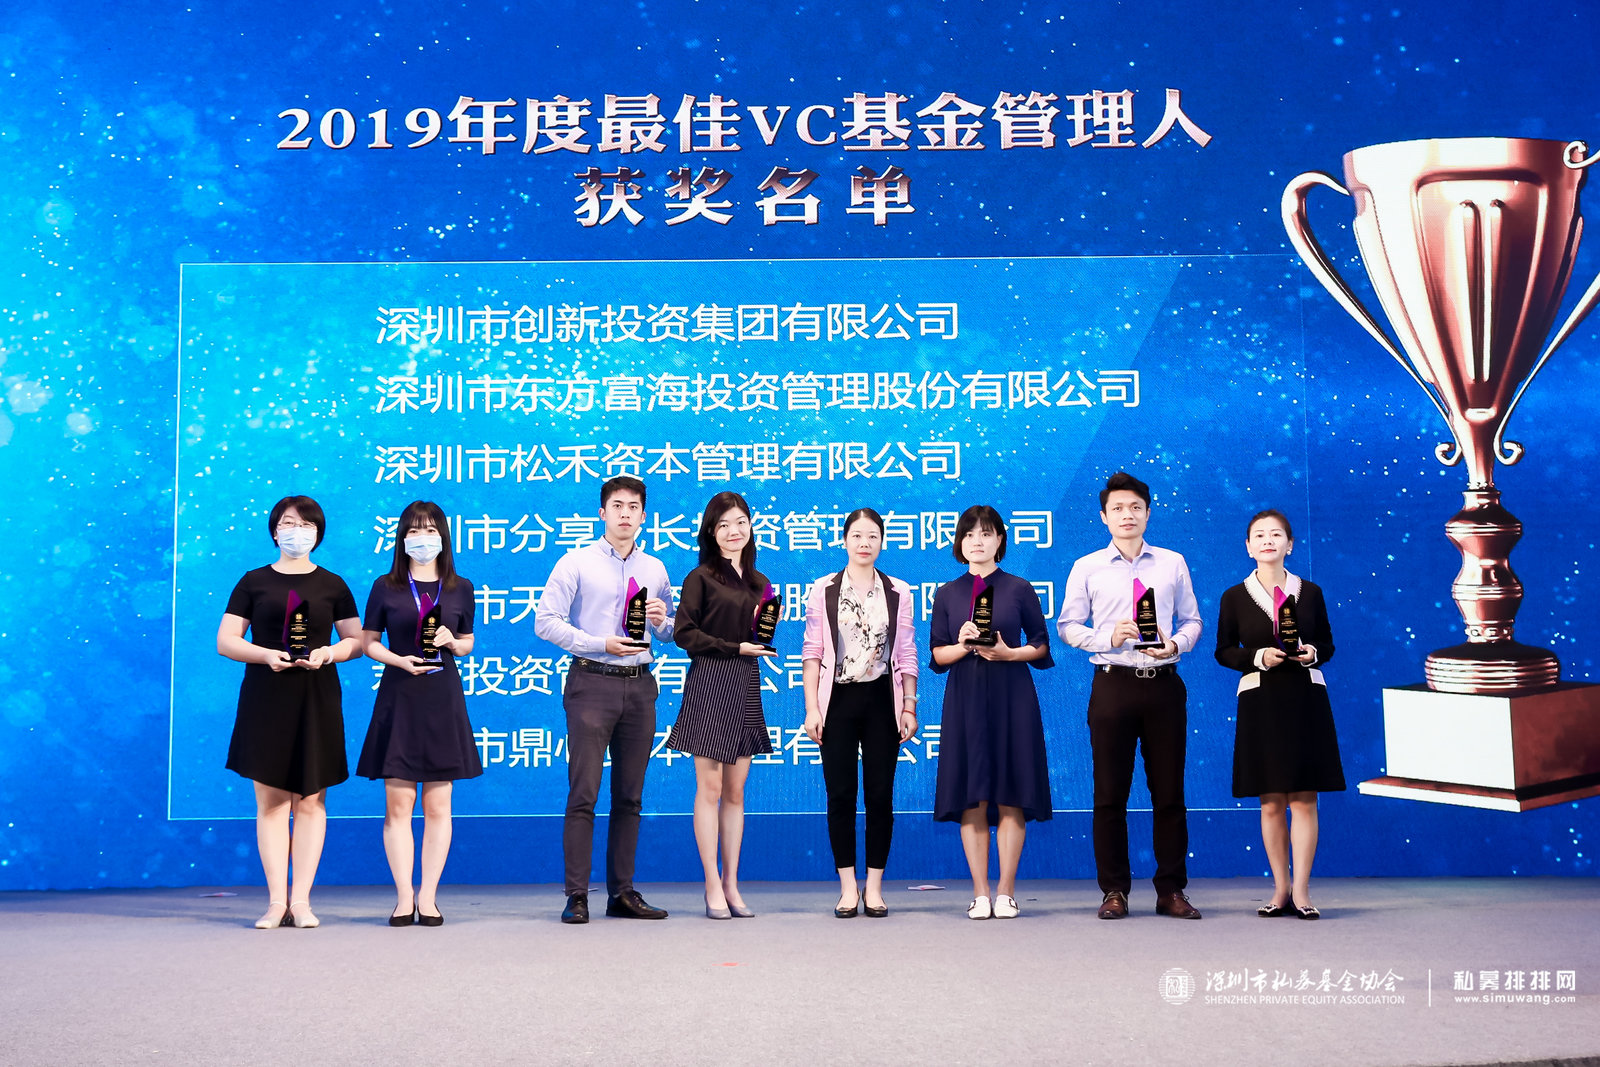 简讯 | 分享投资再获深圳市私募基金协会年度最佳VC大奖